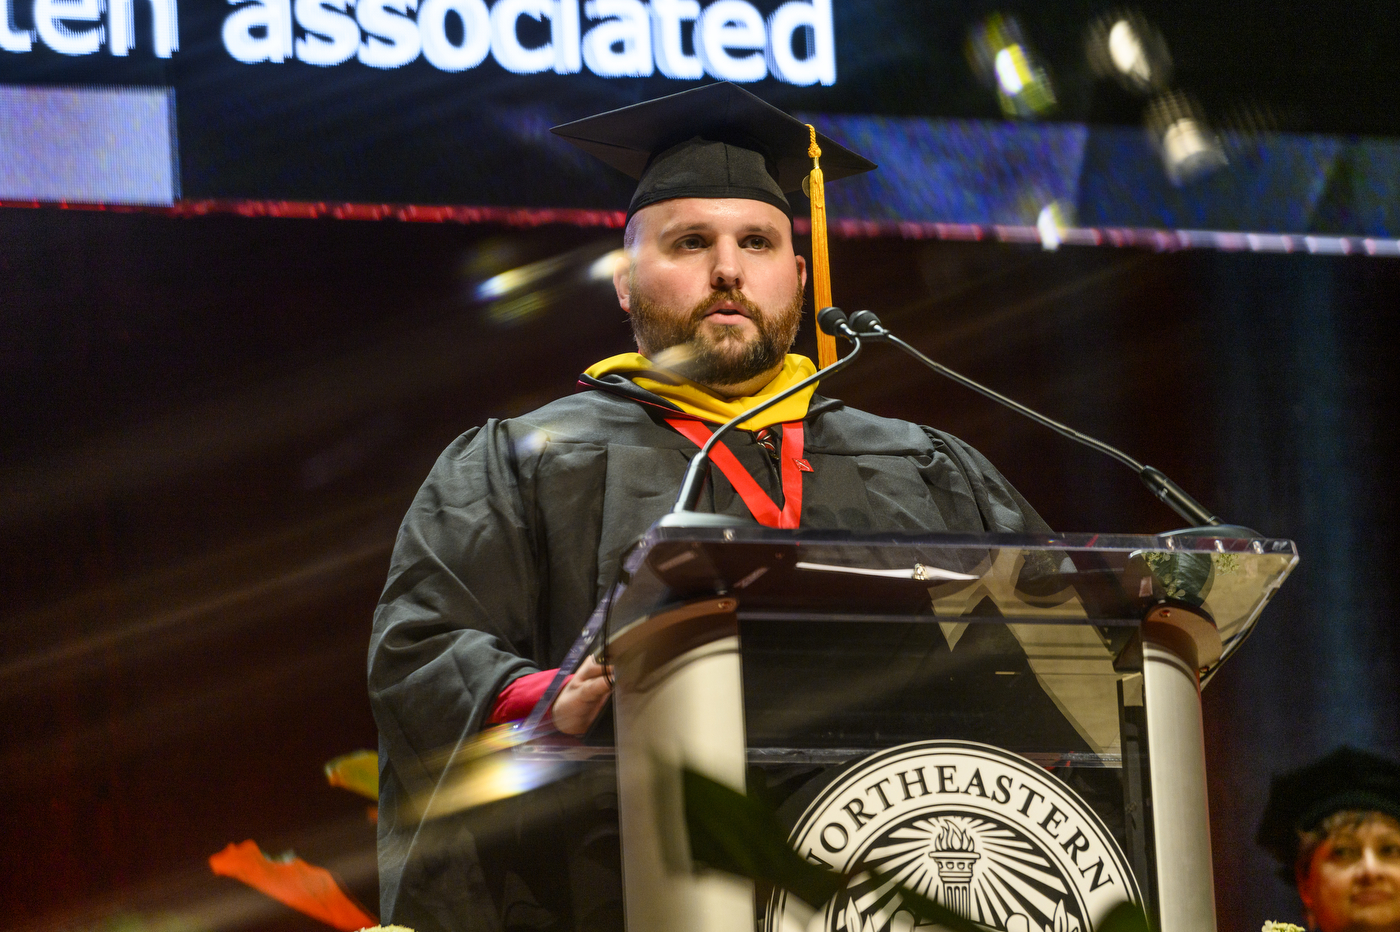 graduate speaking at podium